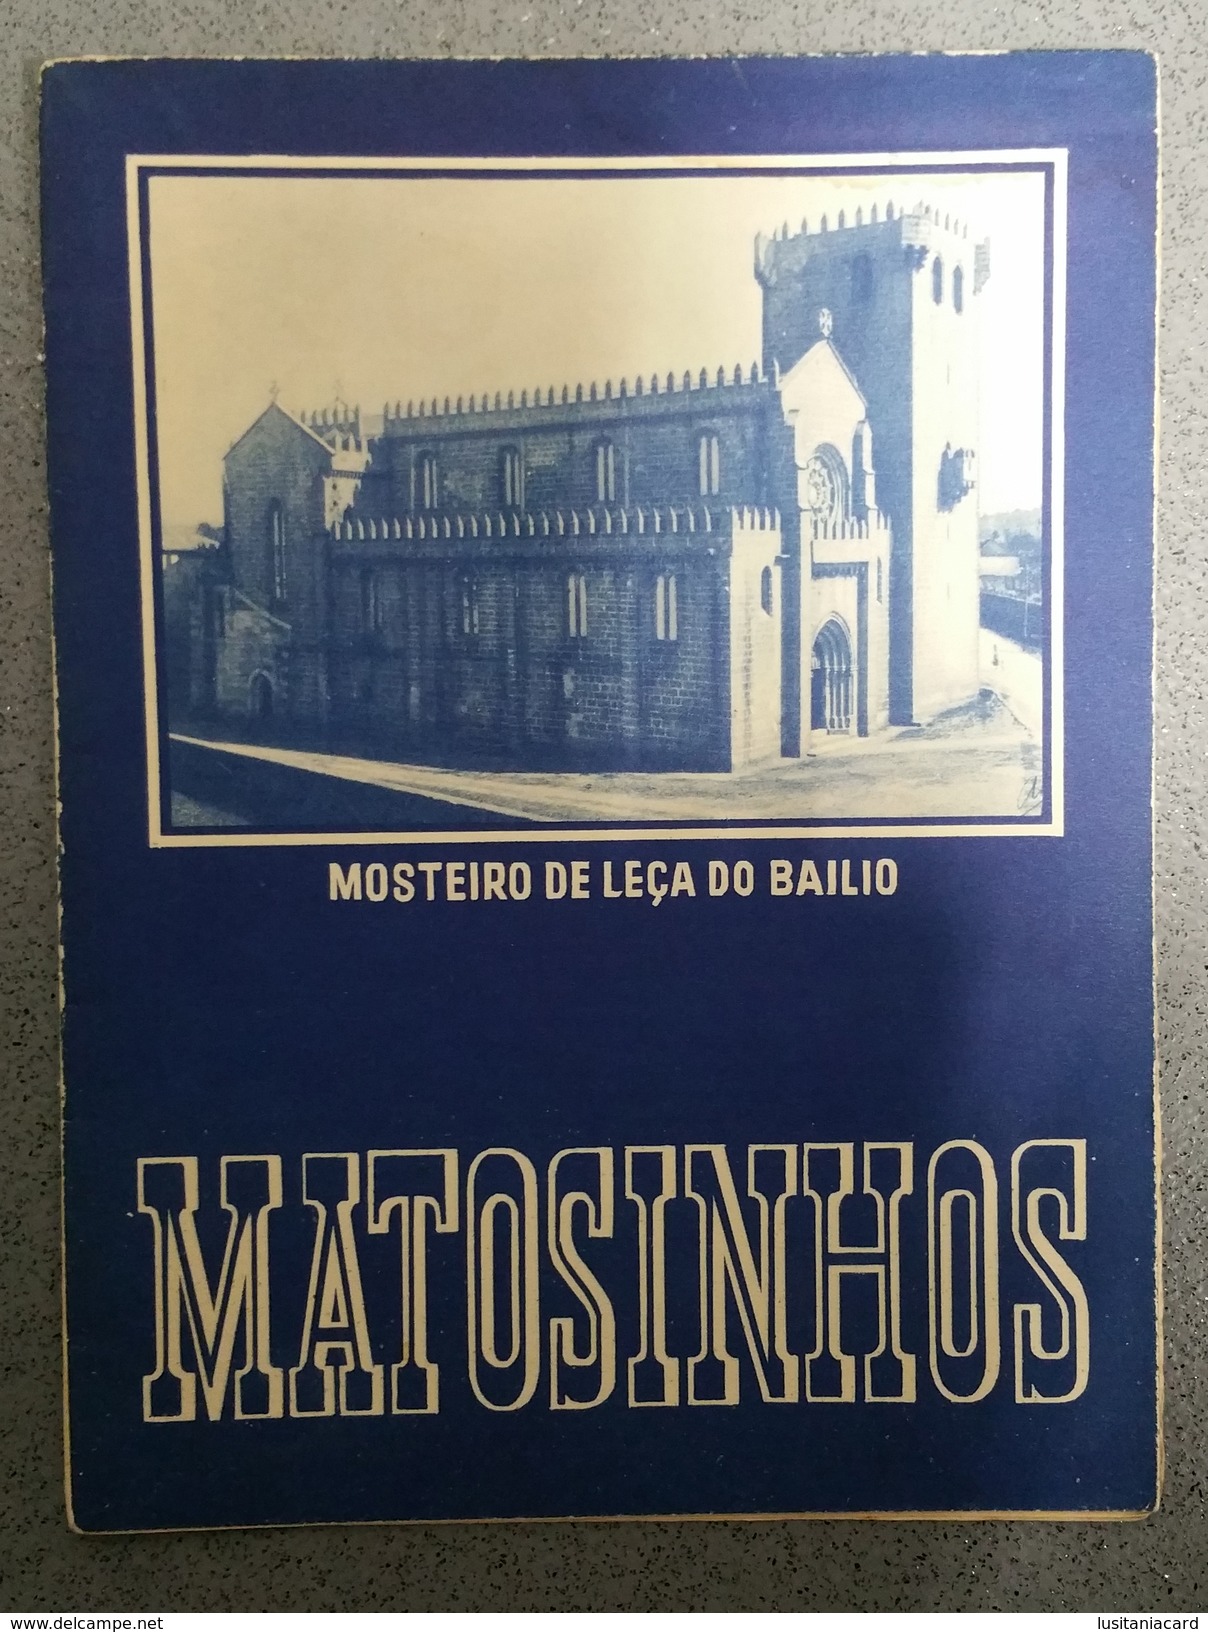 MATOSINHOS - ROTEIRO TURISTICO - « Mosteiro De Leça Do Balio» (Ed. ROTEP Nº 174  - 1940 ) - Livres Anciens